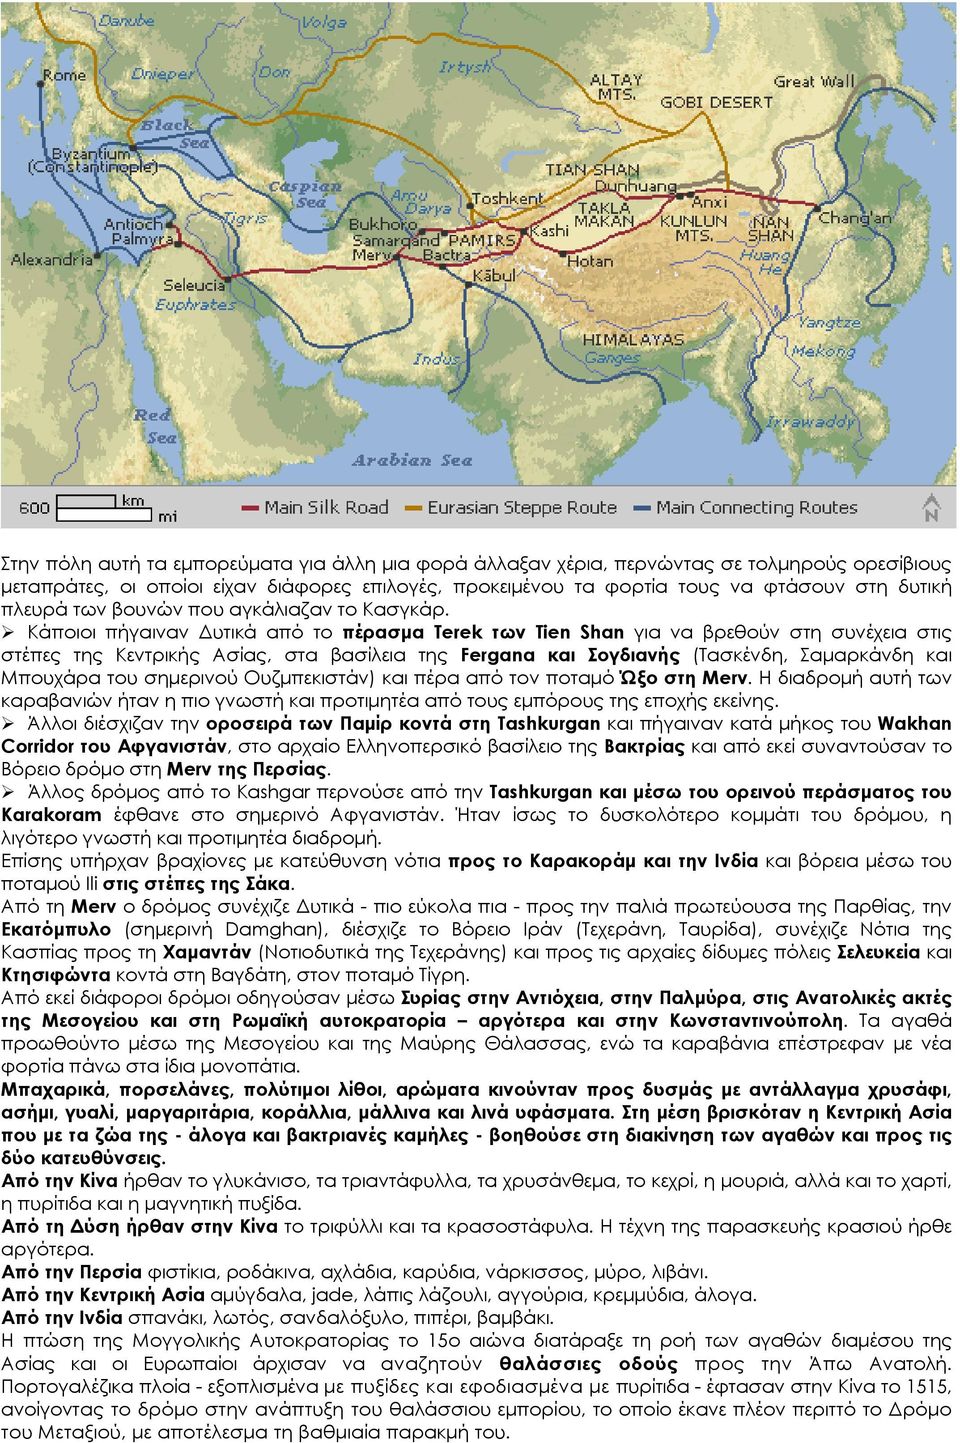 Κάποιοι πήγαιναν Δυτικά από το πέρασμα Terek των Tien Shan για να βρεθούν στη συνέχεια στις στέπες της Κεντρικής Ασίας, στα βασίλεια της Fergana και Σογδιανής (Τασκένδη, Σαμαρκάνδη και Μπουχάρα του